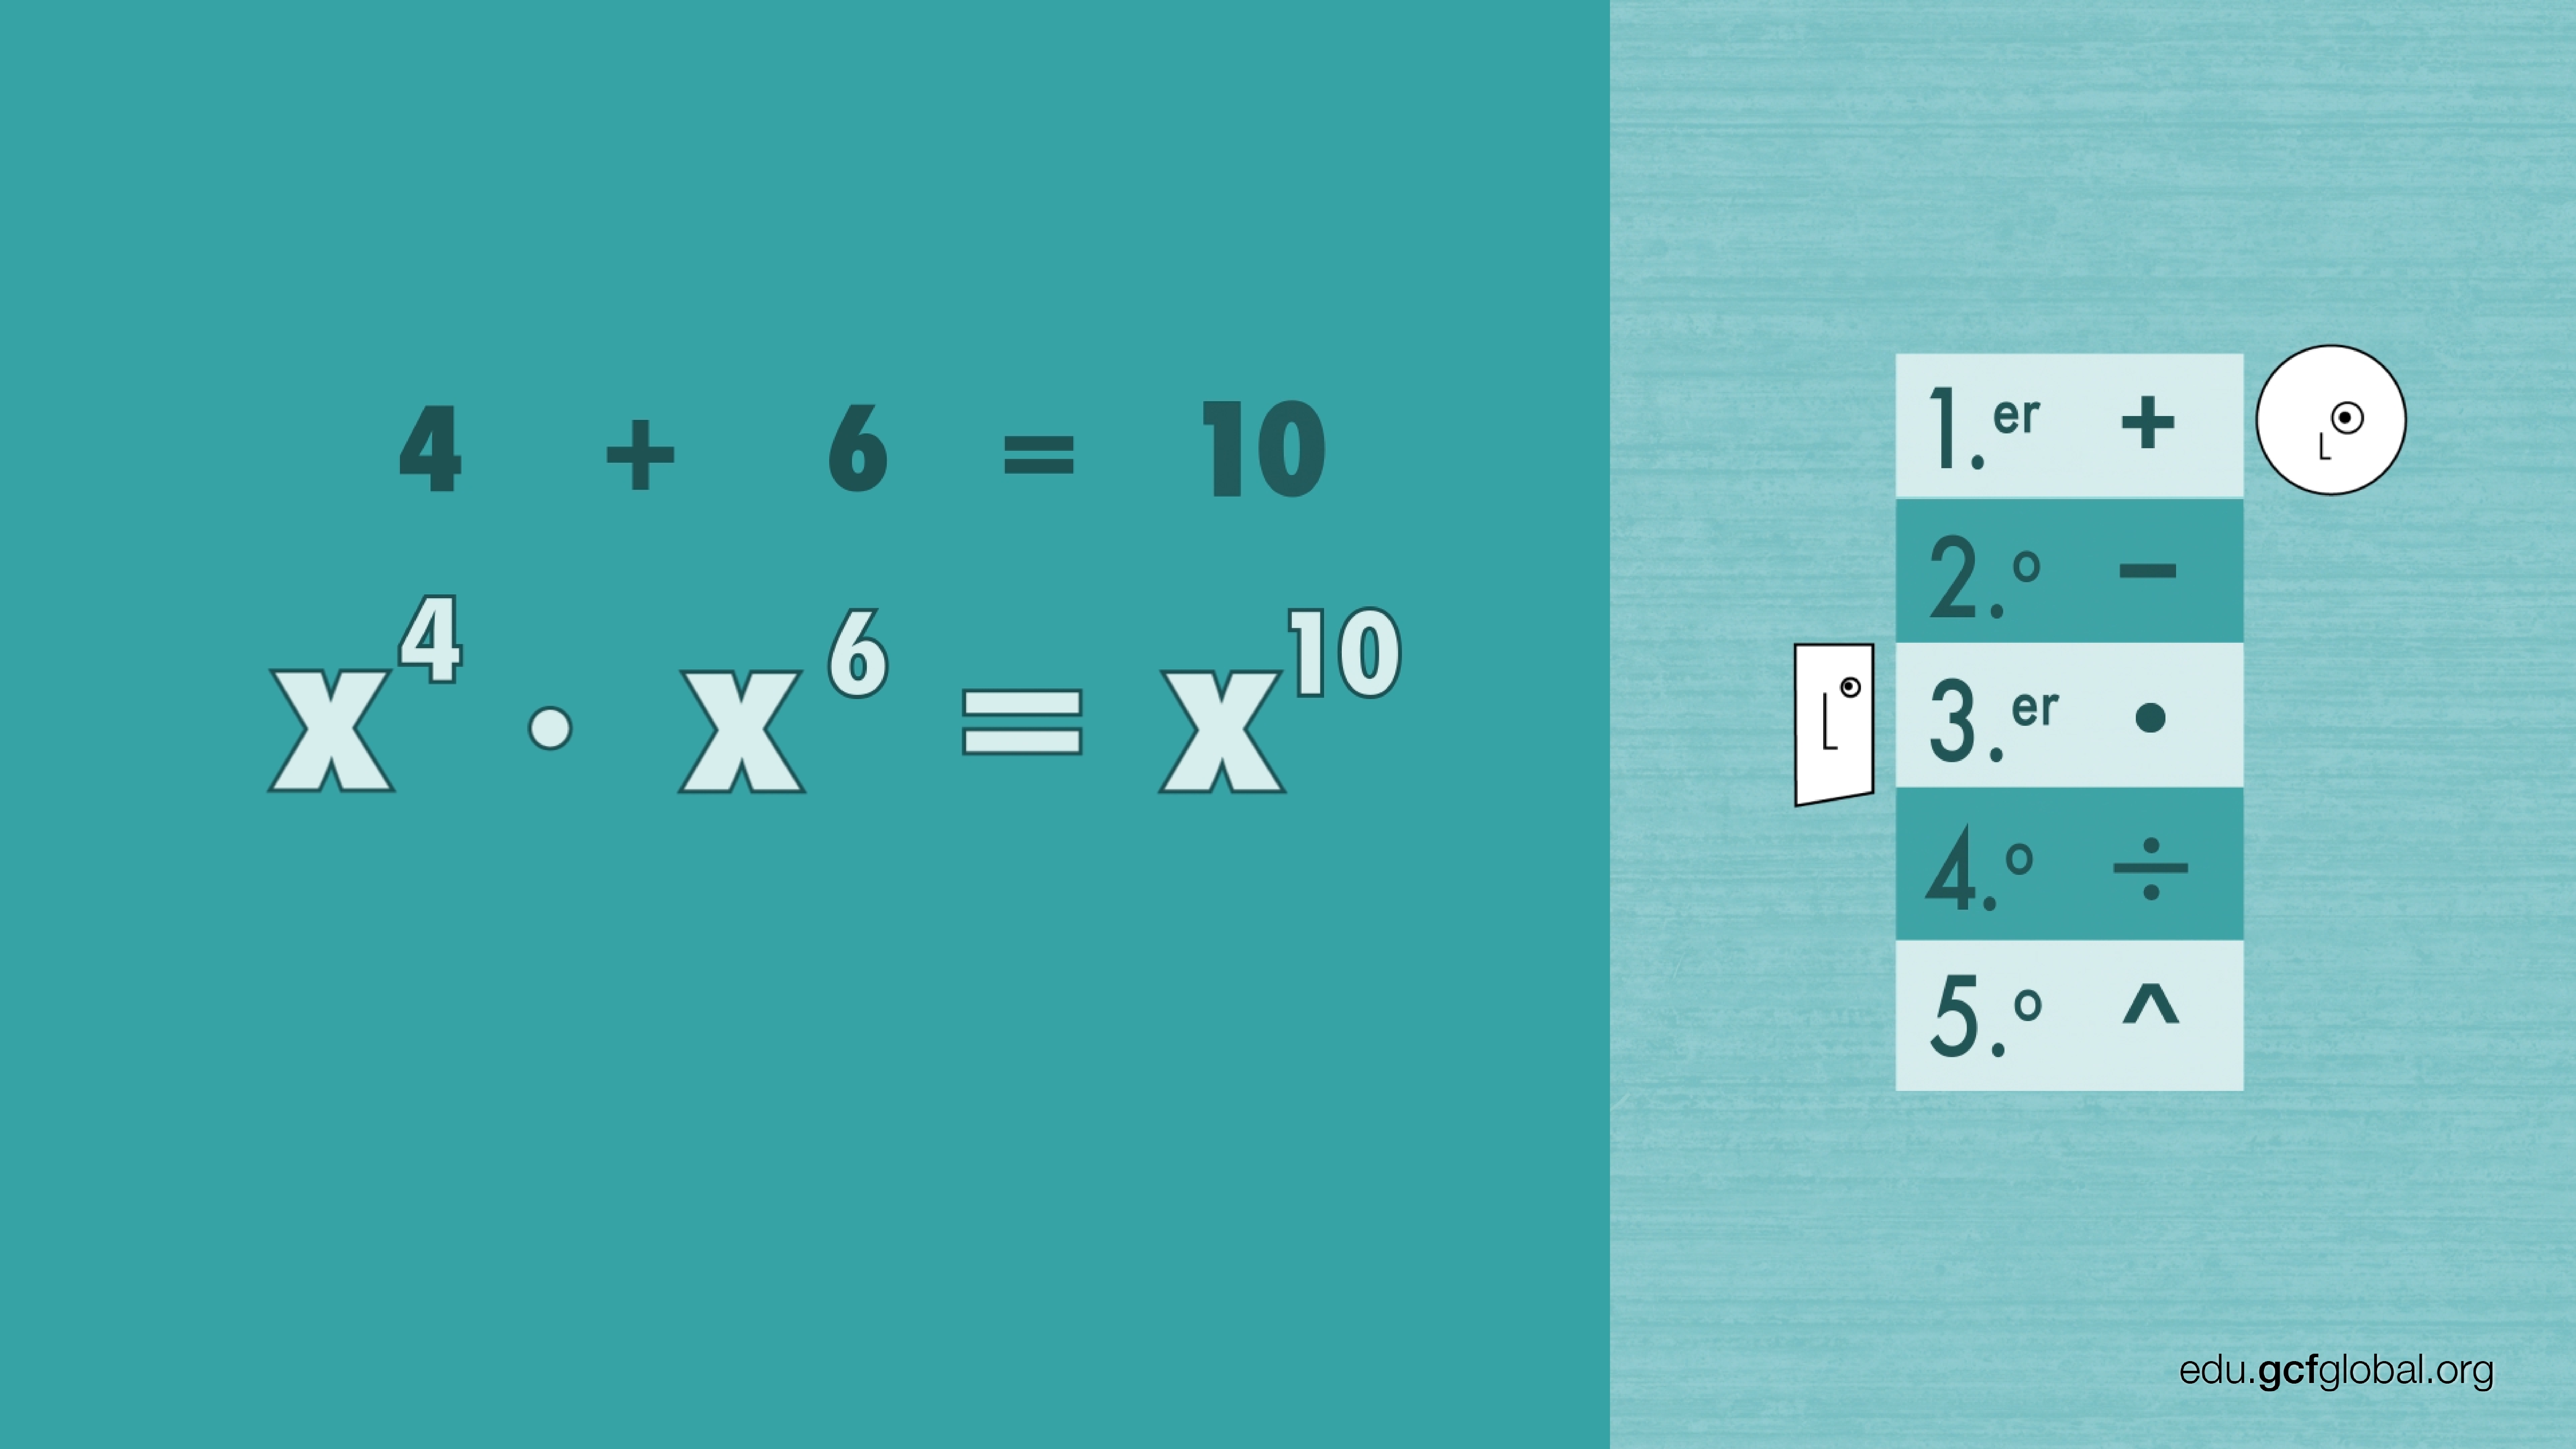 Exemplo de multiplicação das potências: x4 * x6, com resultado de x10.